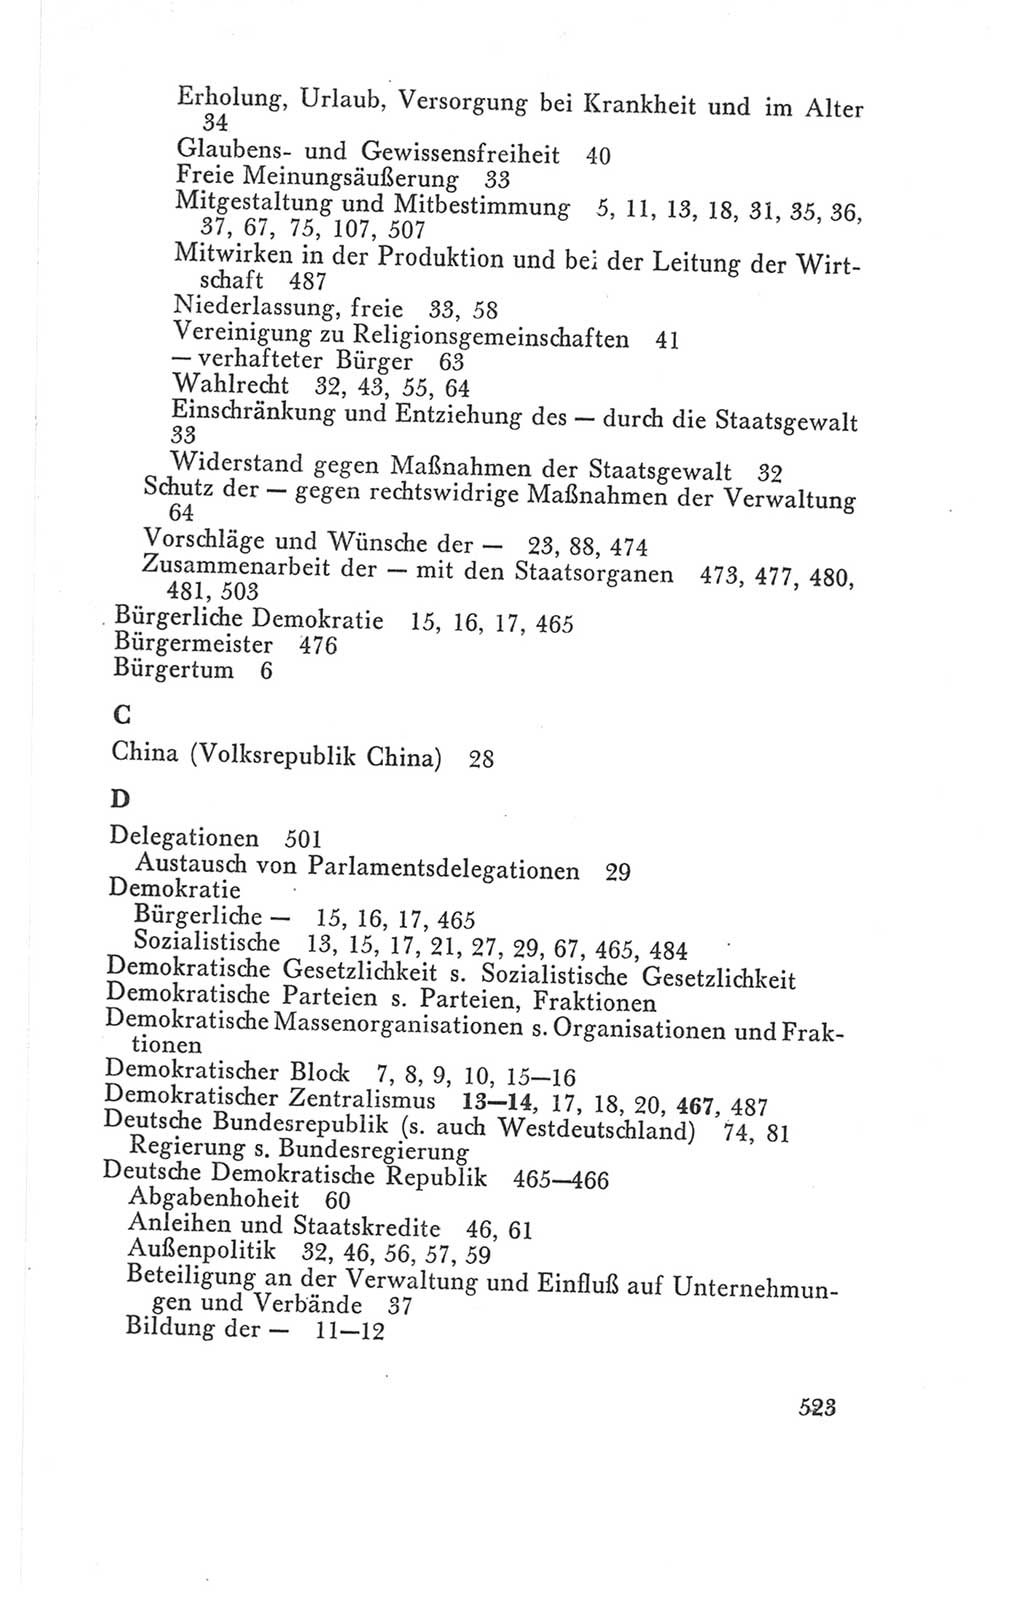 Handbuch der Volkskammer (VK) der Deutschen Demokratischen Republik (DDR), 3. Wahlperiode 1958-1963, Seite 523 (Hdb. VK. DDR 3. WP. 1958-1963, S. 523)